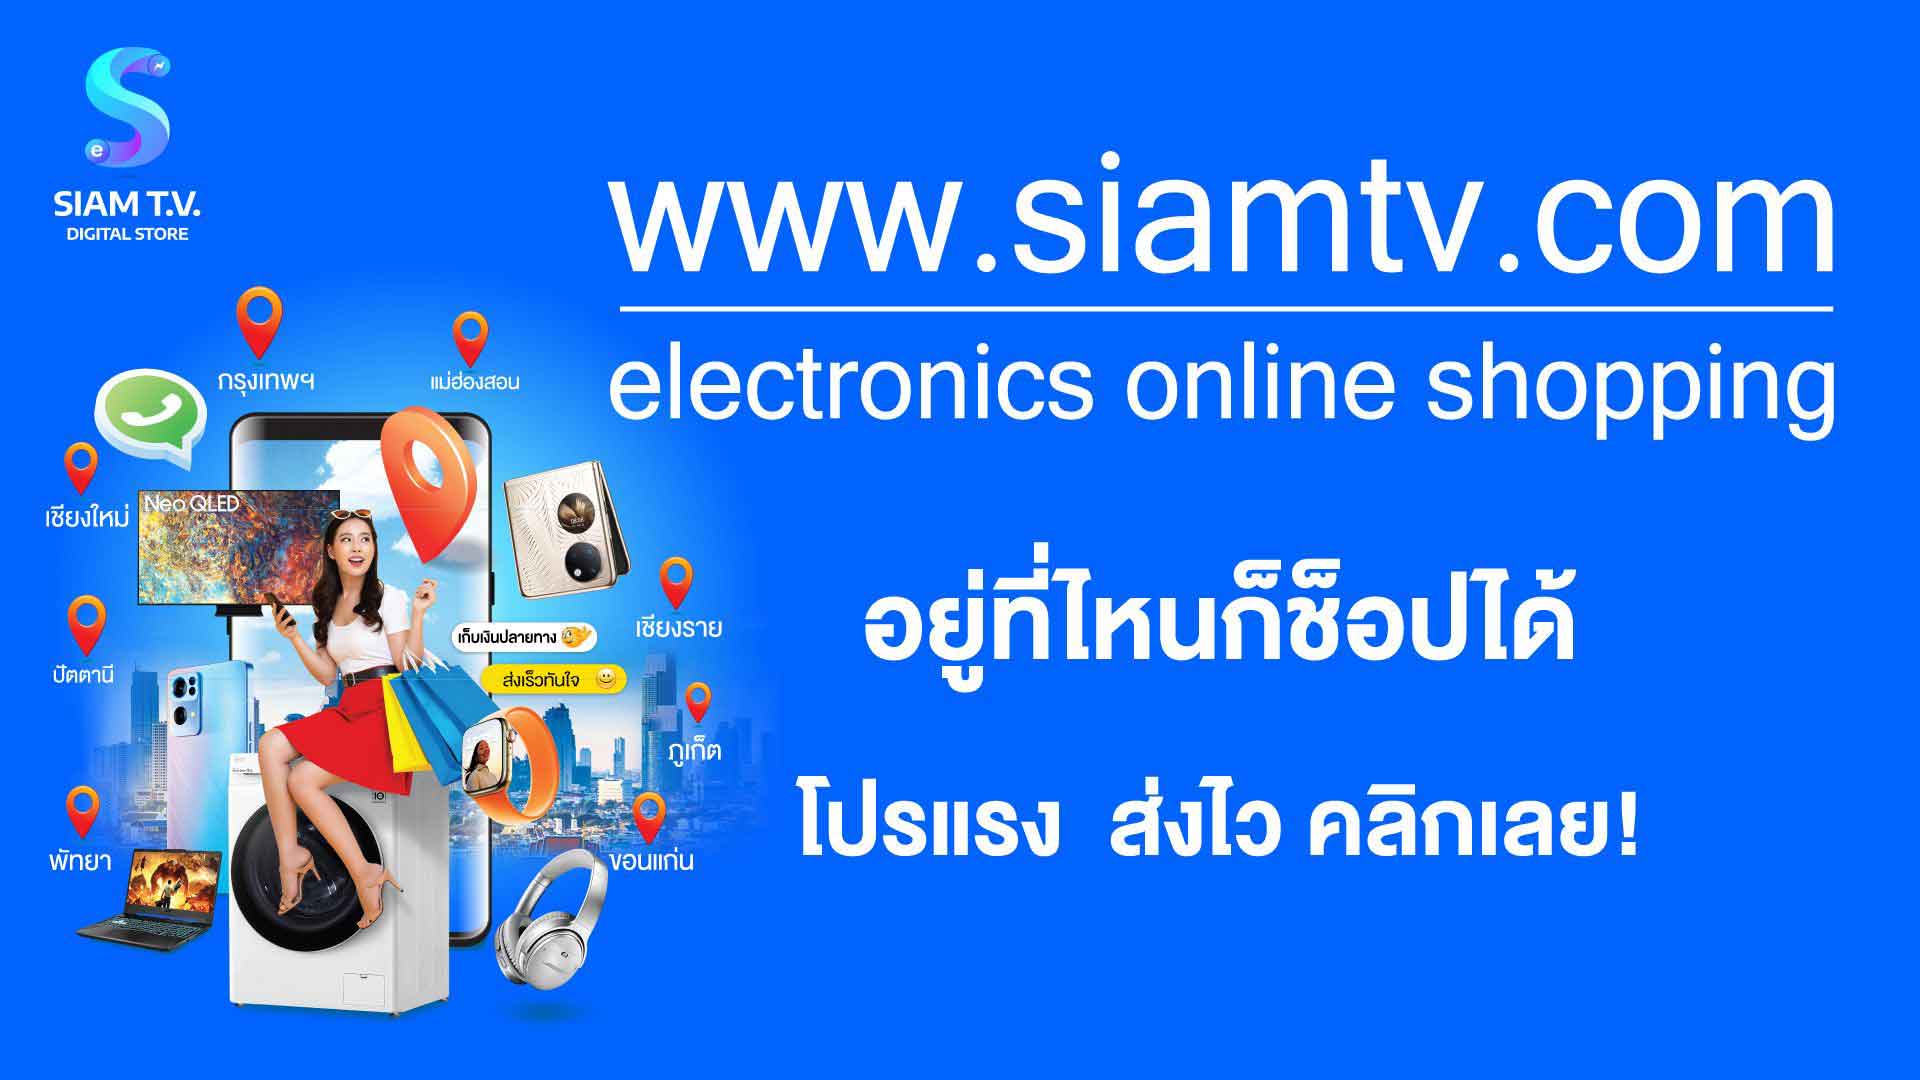 ซื้อออนไลน์ได้ที่ Siam T.V.  ศูนย์รวมเครื่องใช้ไฟฟ้าในภาคเหนือ